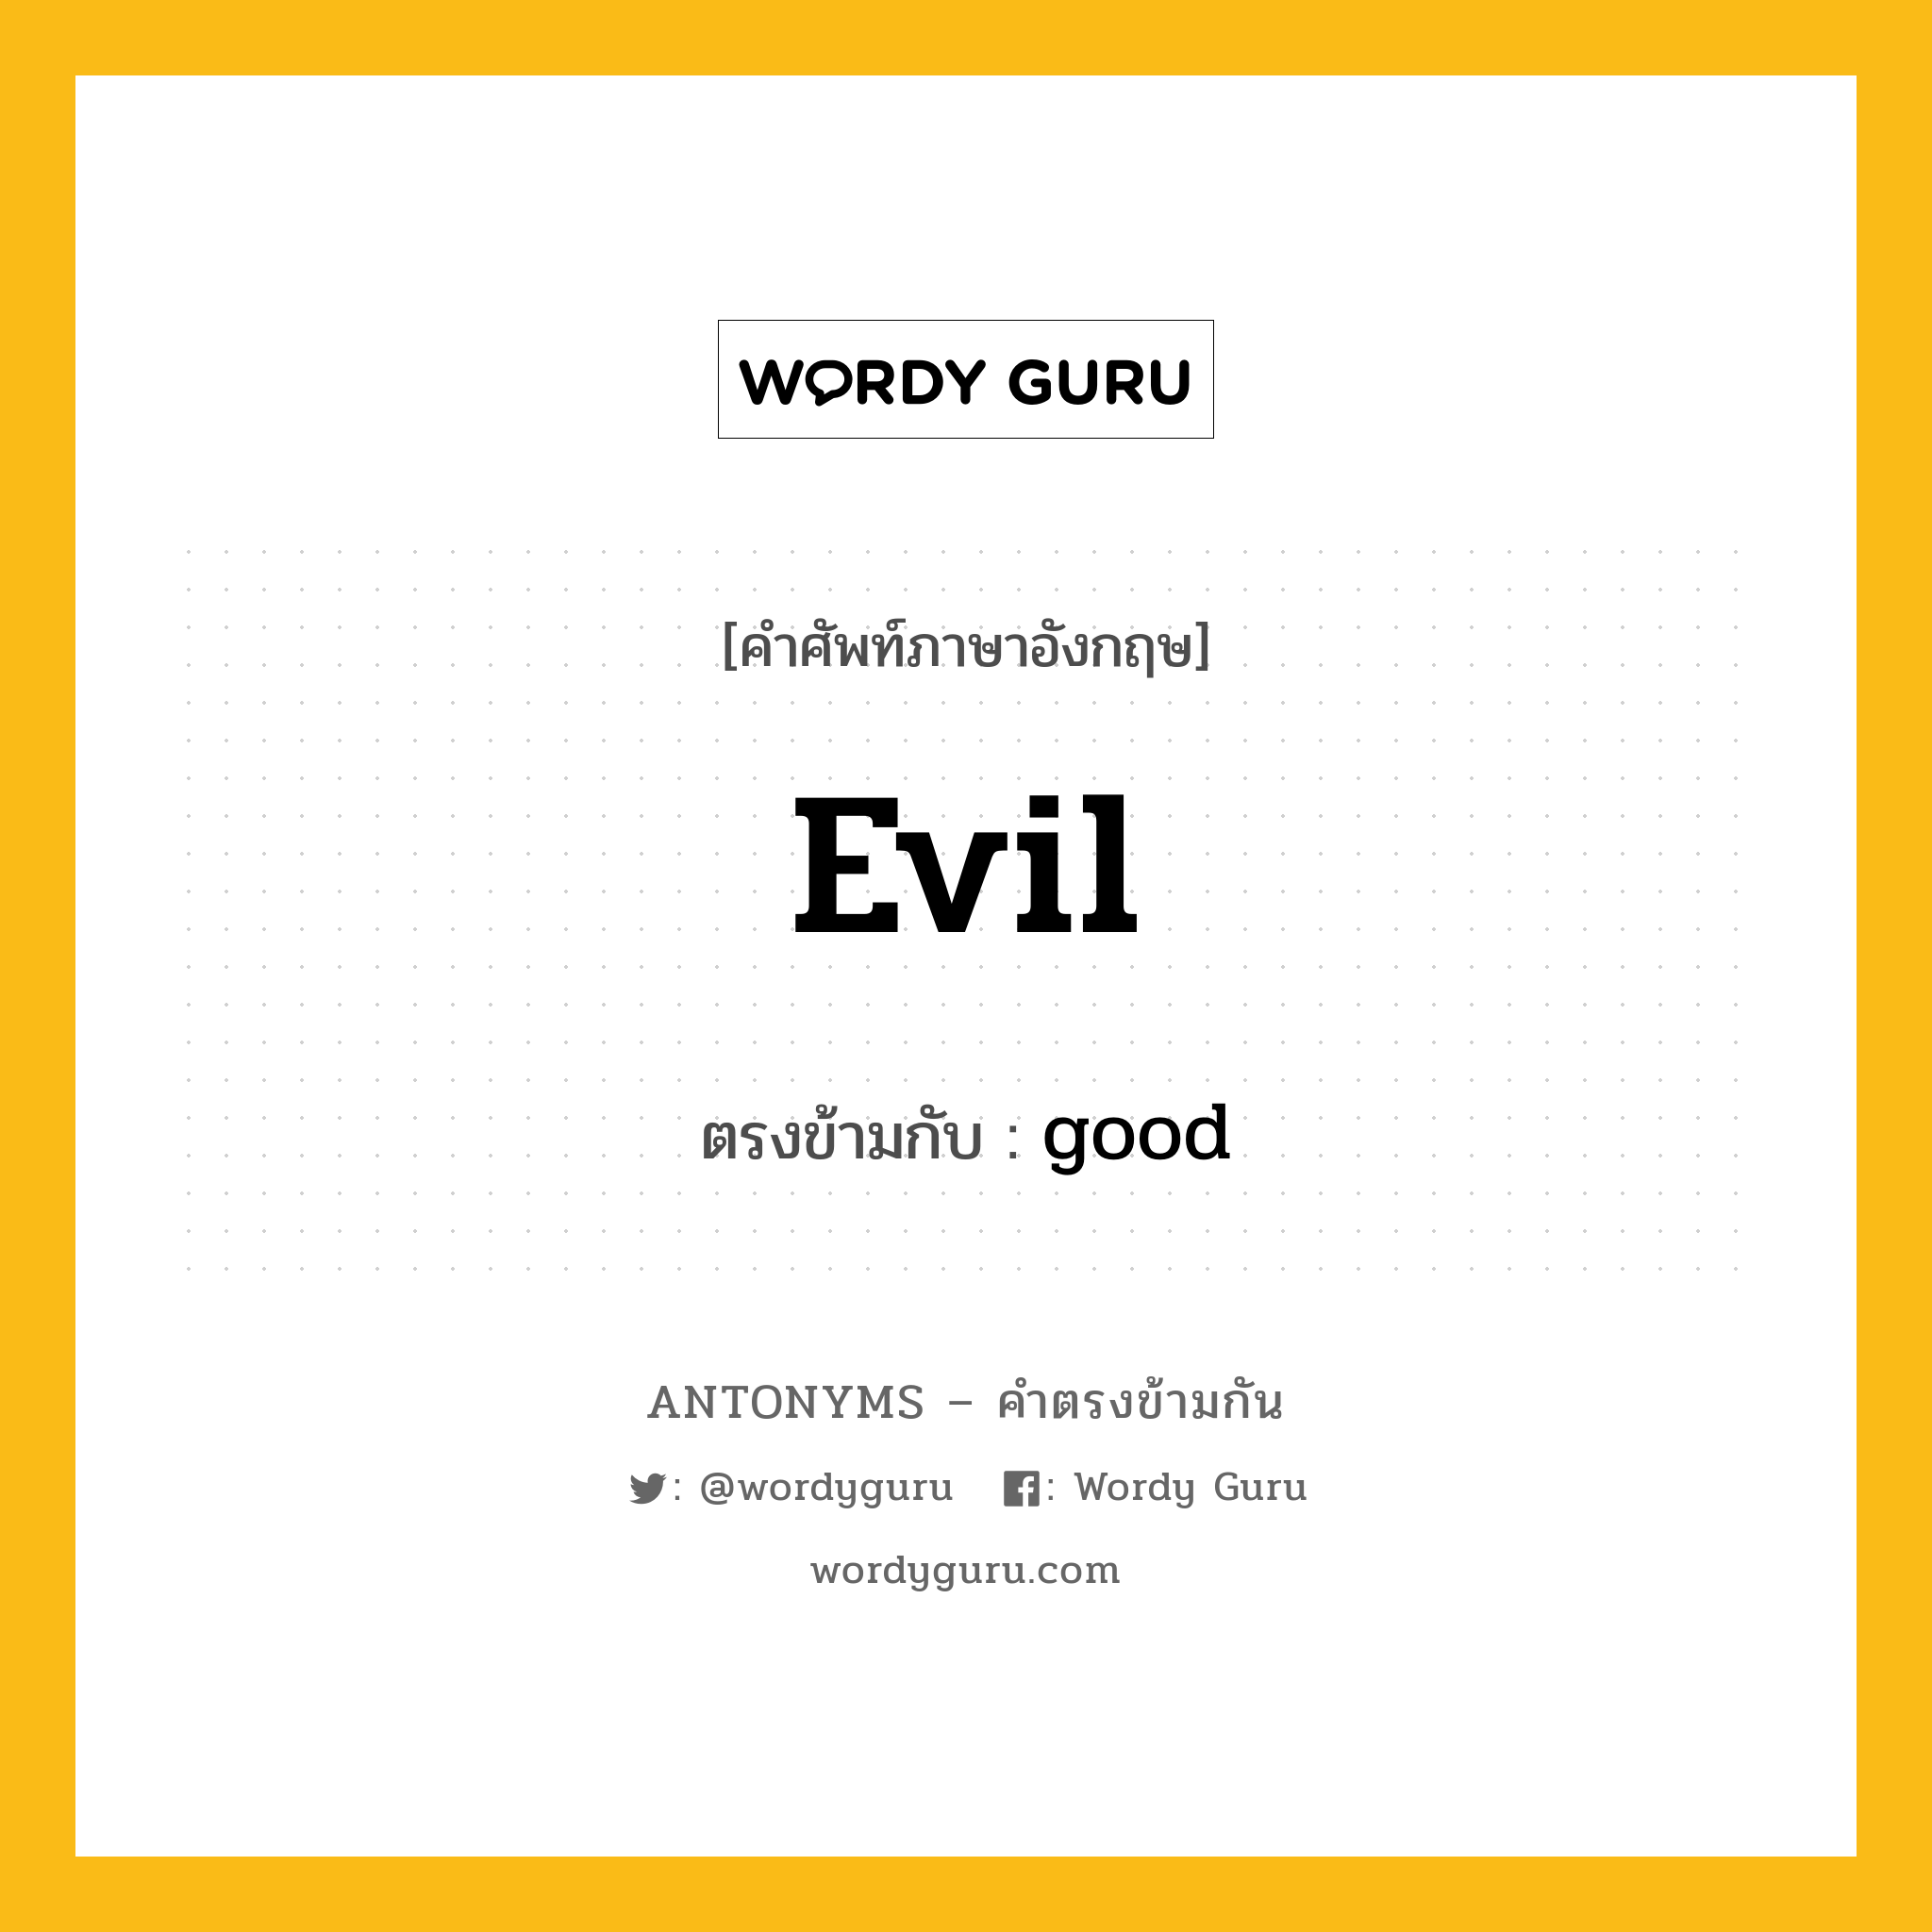 evil เป็นคำตรงข้ามกับคำไหนบ้าง?, คำศัพท์ภาษาอังกฤษ evil ตรงข้ามกับ good หมวด good